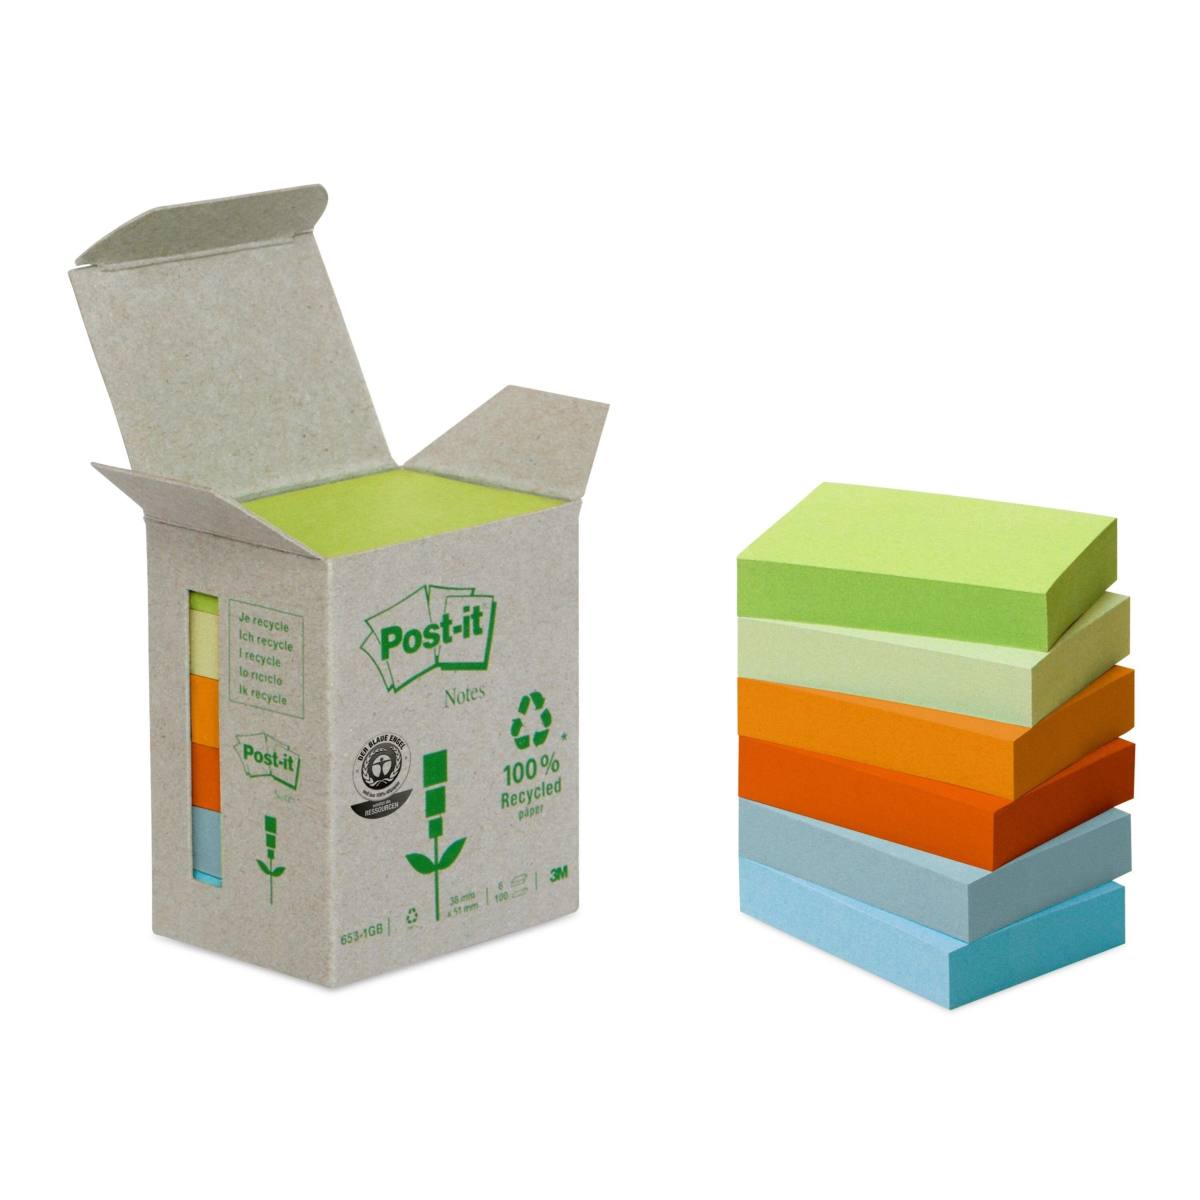 3M Post-it Recycling Notes 653-1GB, 51 mm x 38 mm, verschillende kleuren, 6 blokken van elk 100 vellen